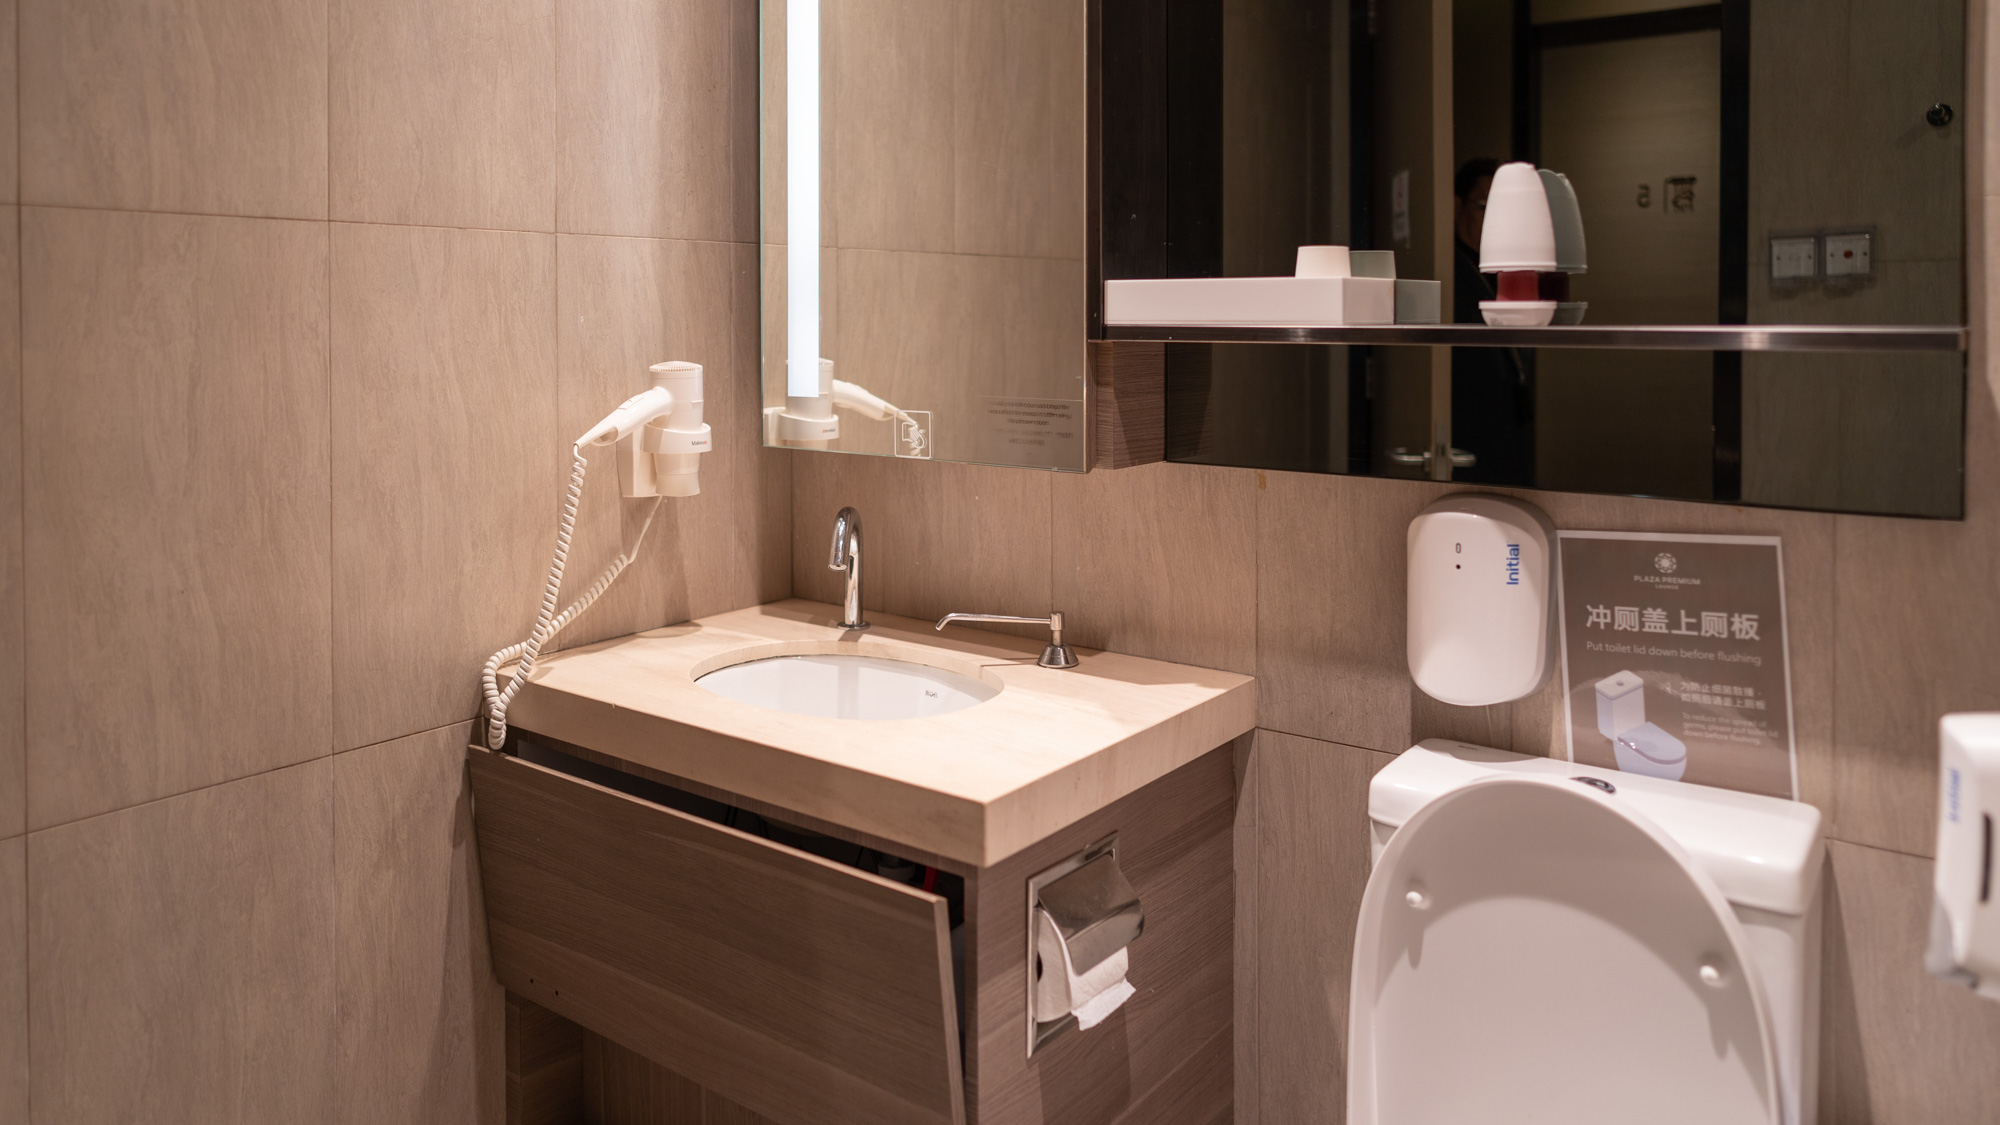 Plaza Premium Singapore shower suite